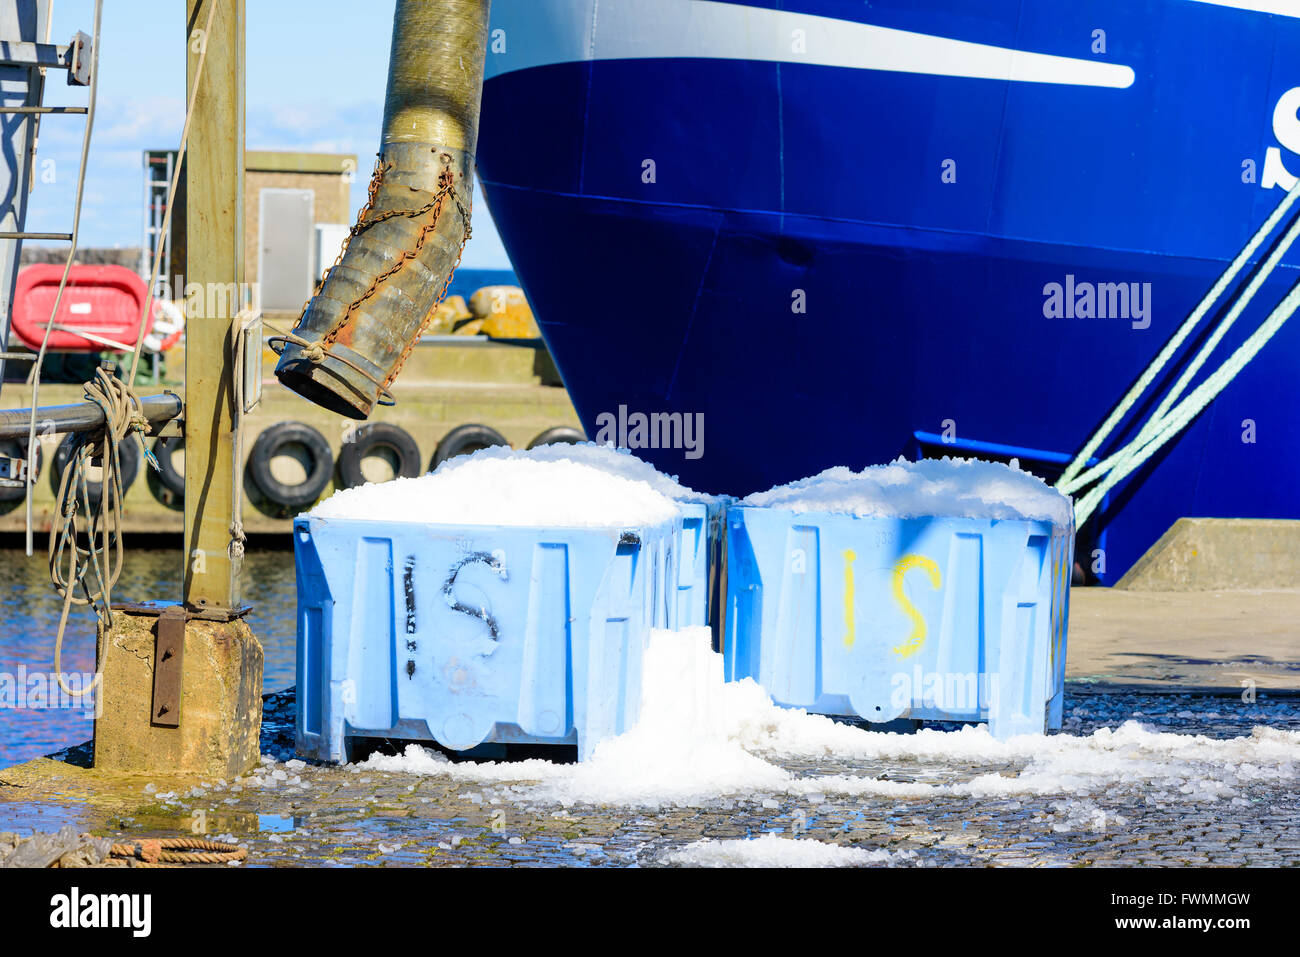 Caisses en plastique rempli de glace froide pour l'utilisation dans l'industrie de la pêche. Partie d'un bateau de pêche dans l'arrière-plan. Un tube pour fillin Banque D'Images